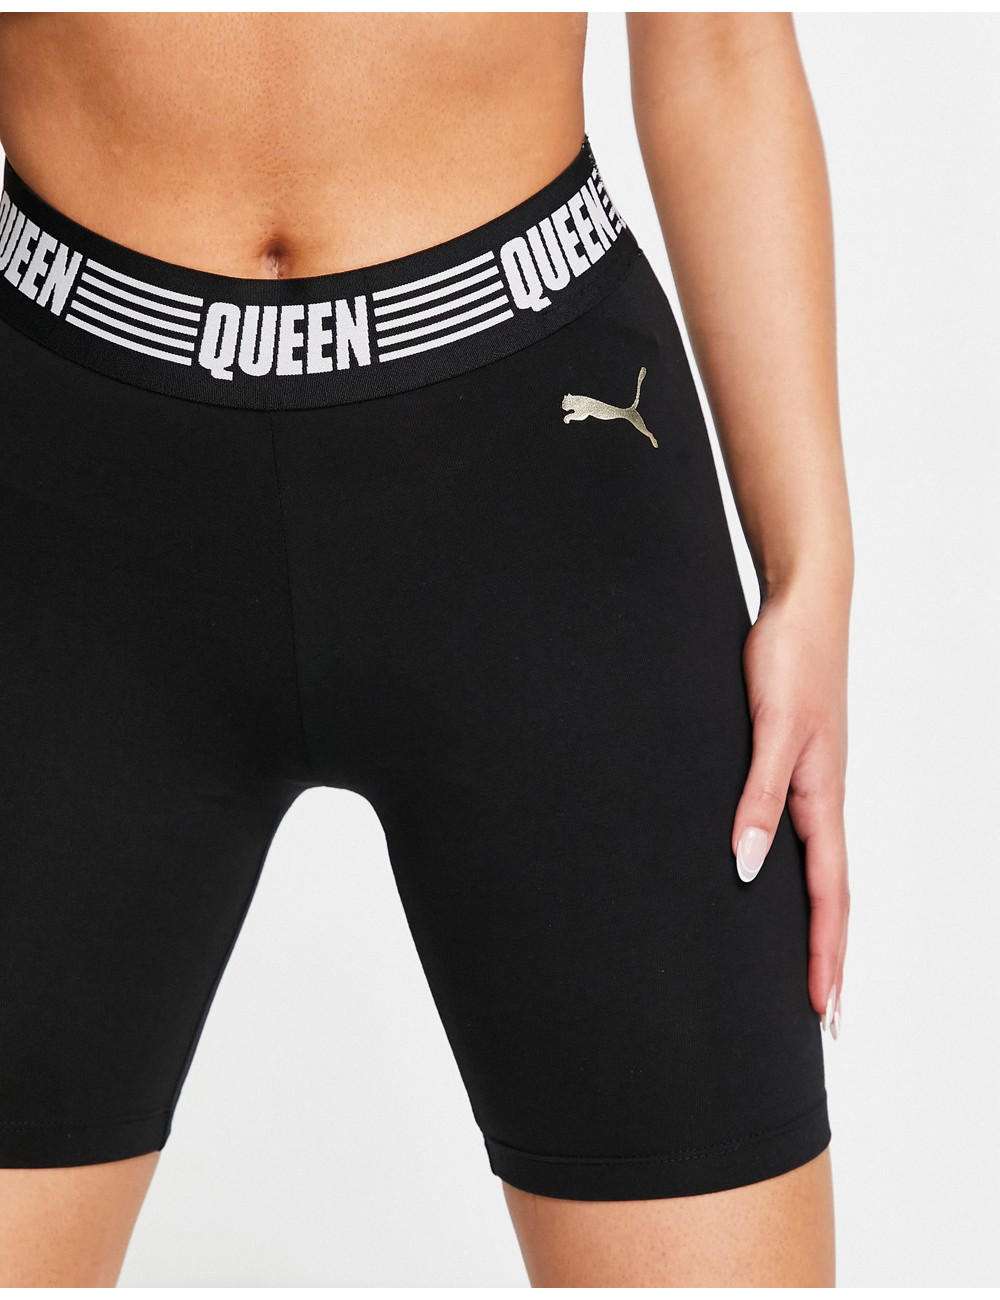 Puma Queen legging shorts...